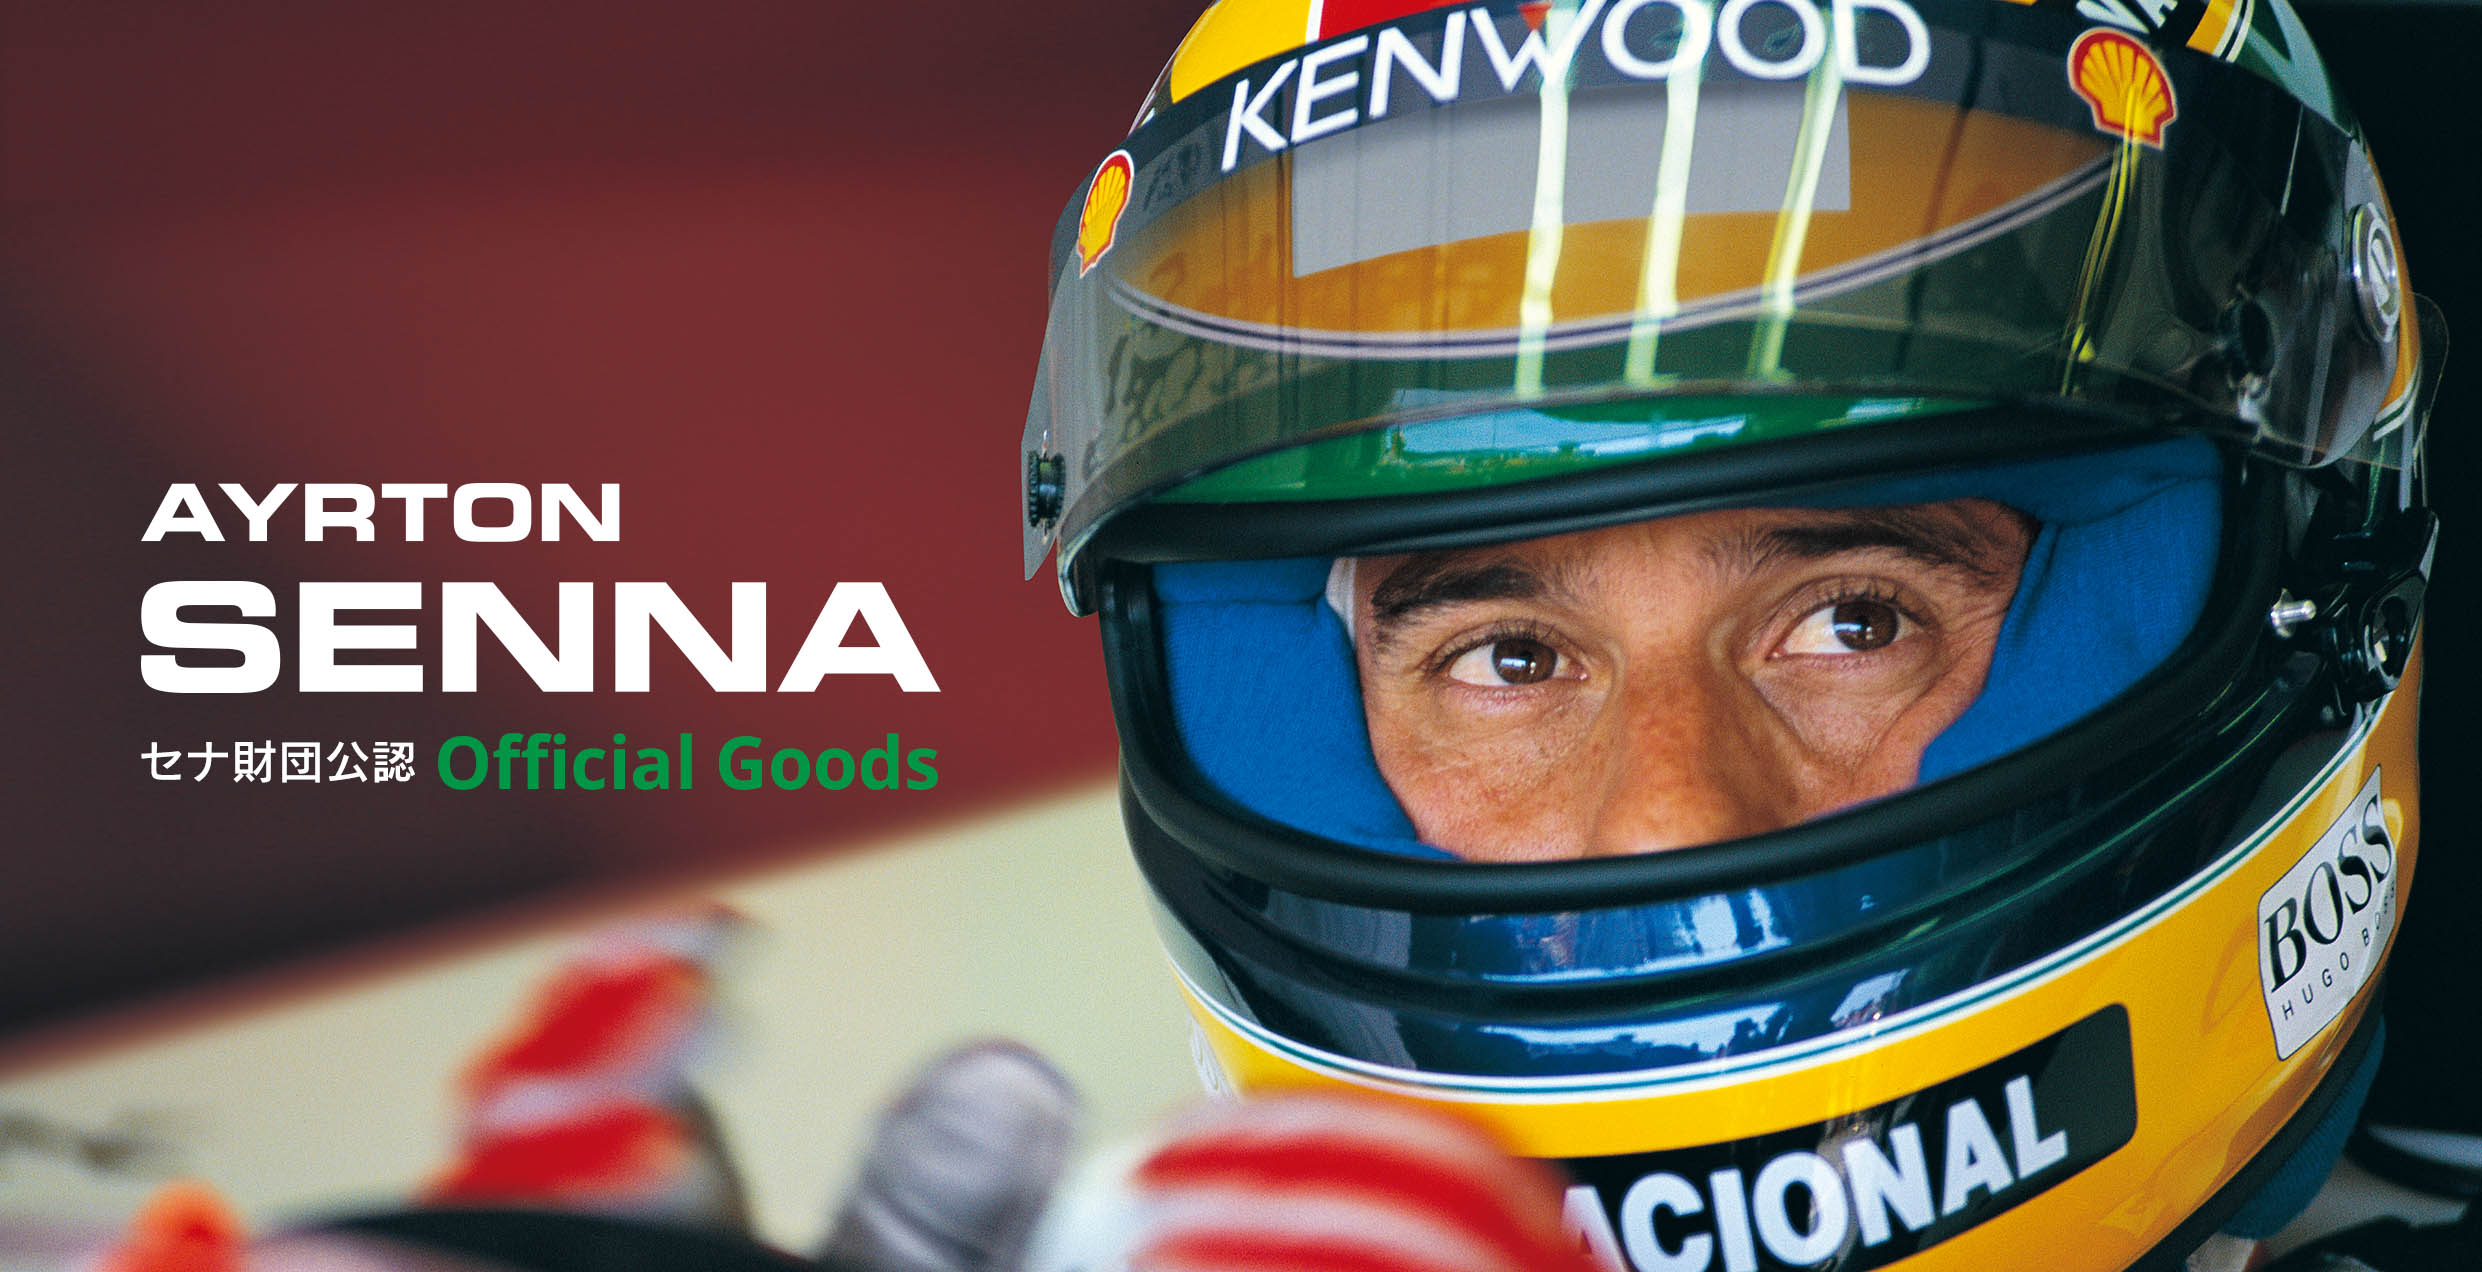 Ayrton Sennaのブランドイメージの画像